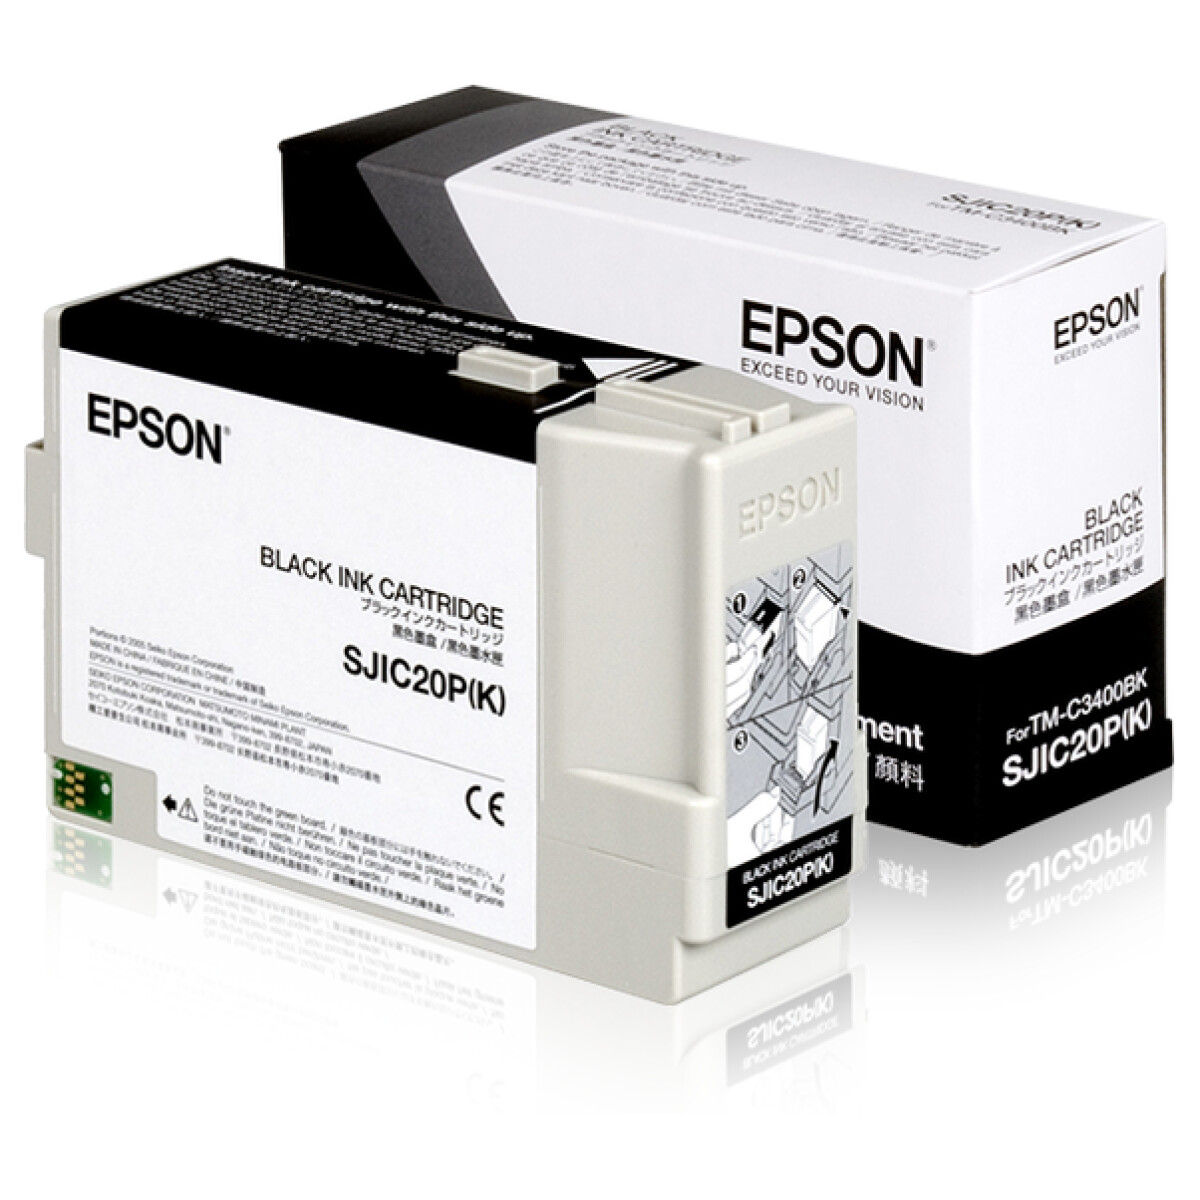 Epson – Printcartridge TM-C3400BK SJIC20P(K) (Zwart)